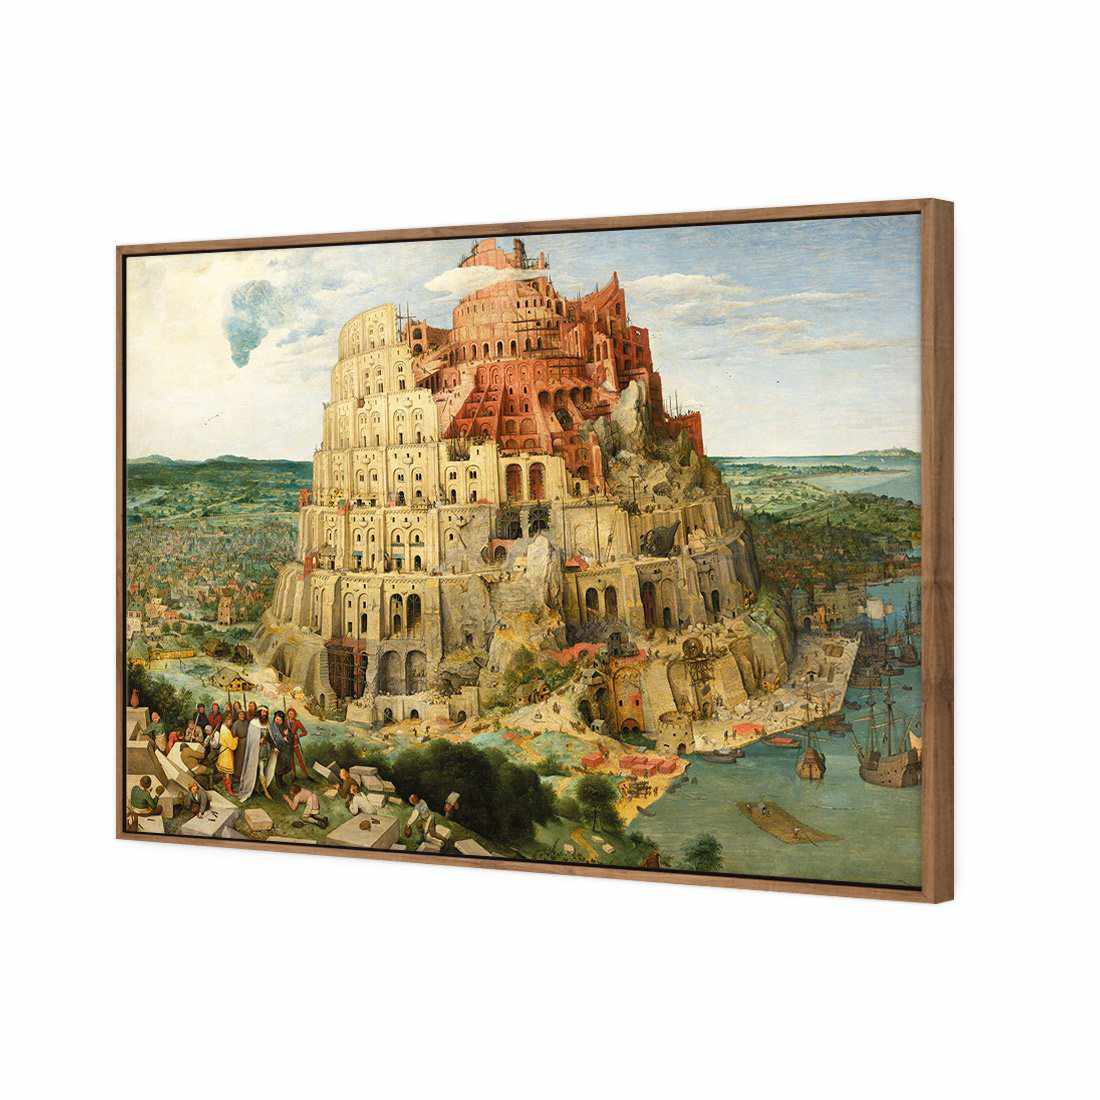 Tower Of Babel - Pieter Bruegel The Elder Canvas Art-Canvas-Wall Art Designs-45x30cm-Canvas - Natural Frame-Wall Art Designs